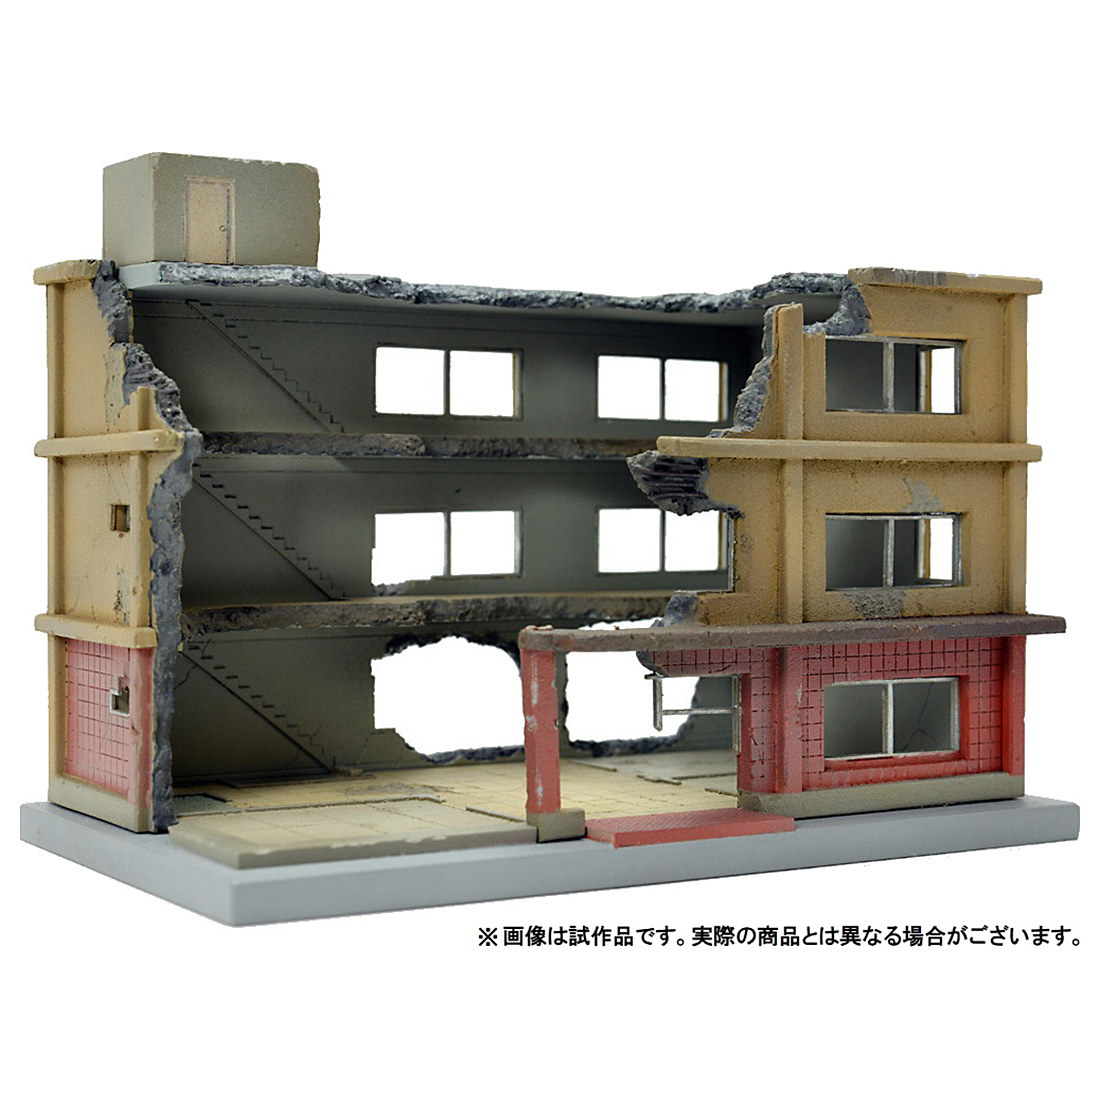 建物の 破壊された 姿を再現 ジオラマ模型素材の新シリーズ ジオコレ コンバット が登場 Game Watch